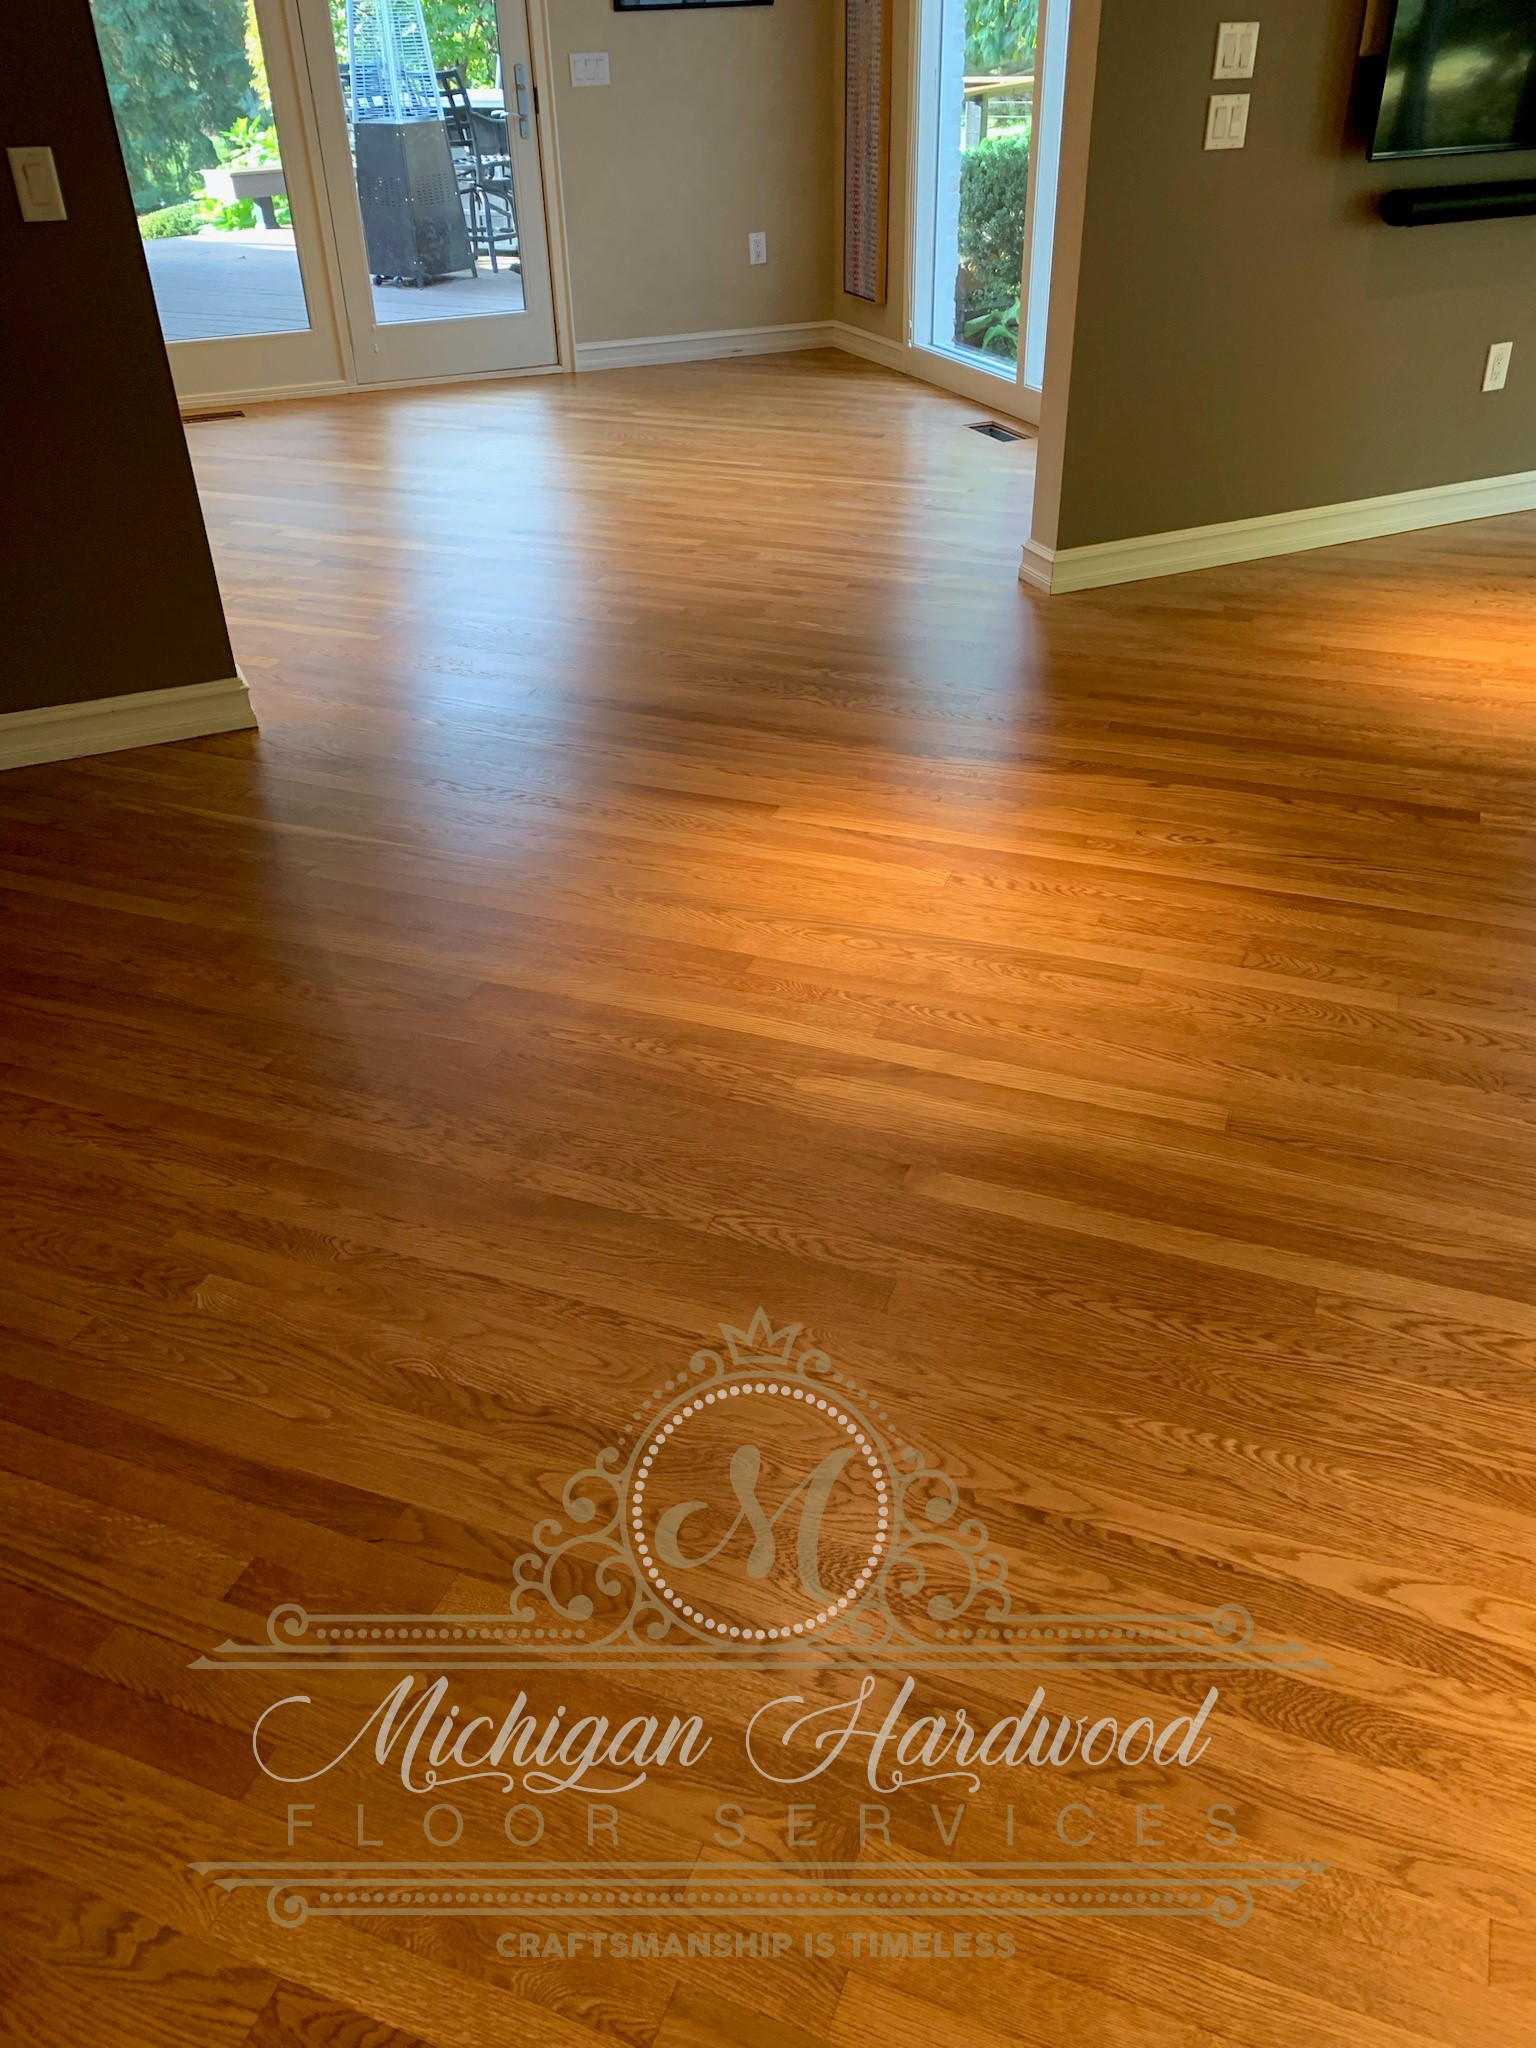 Michigan Hardwood Floor Services